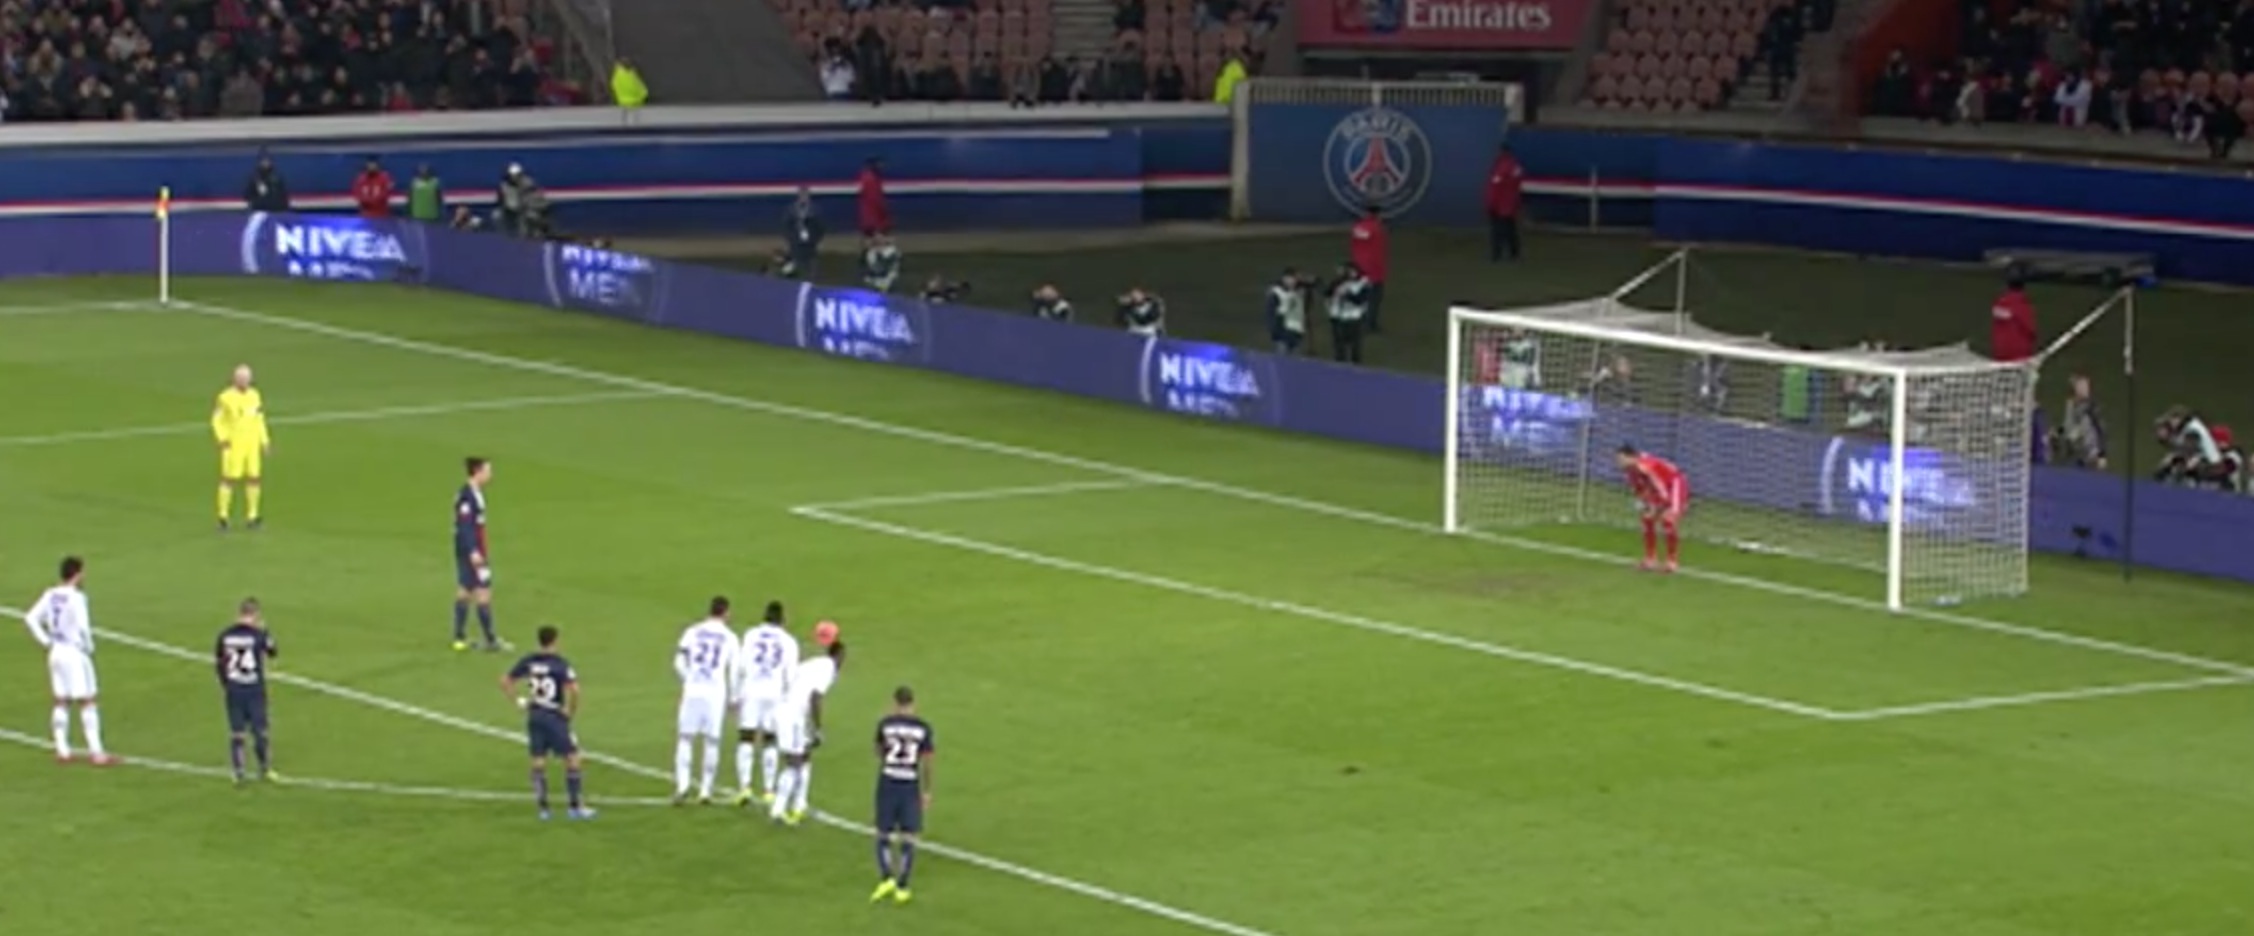 Video Panenka Zlatan Lyon